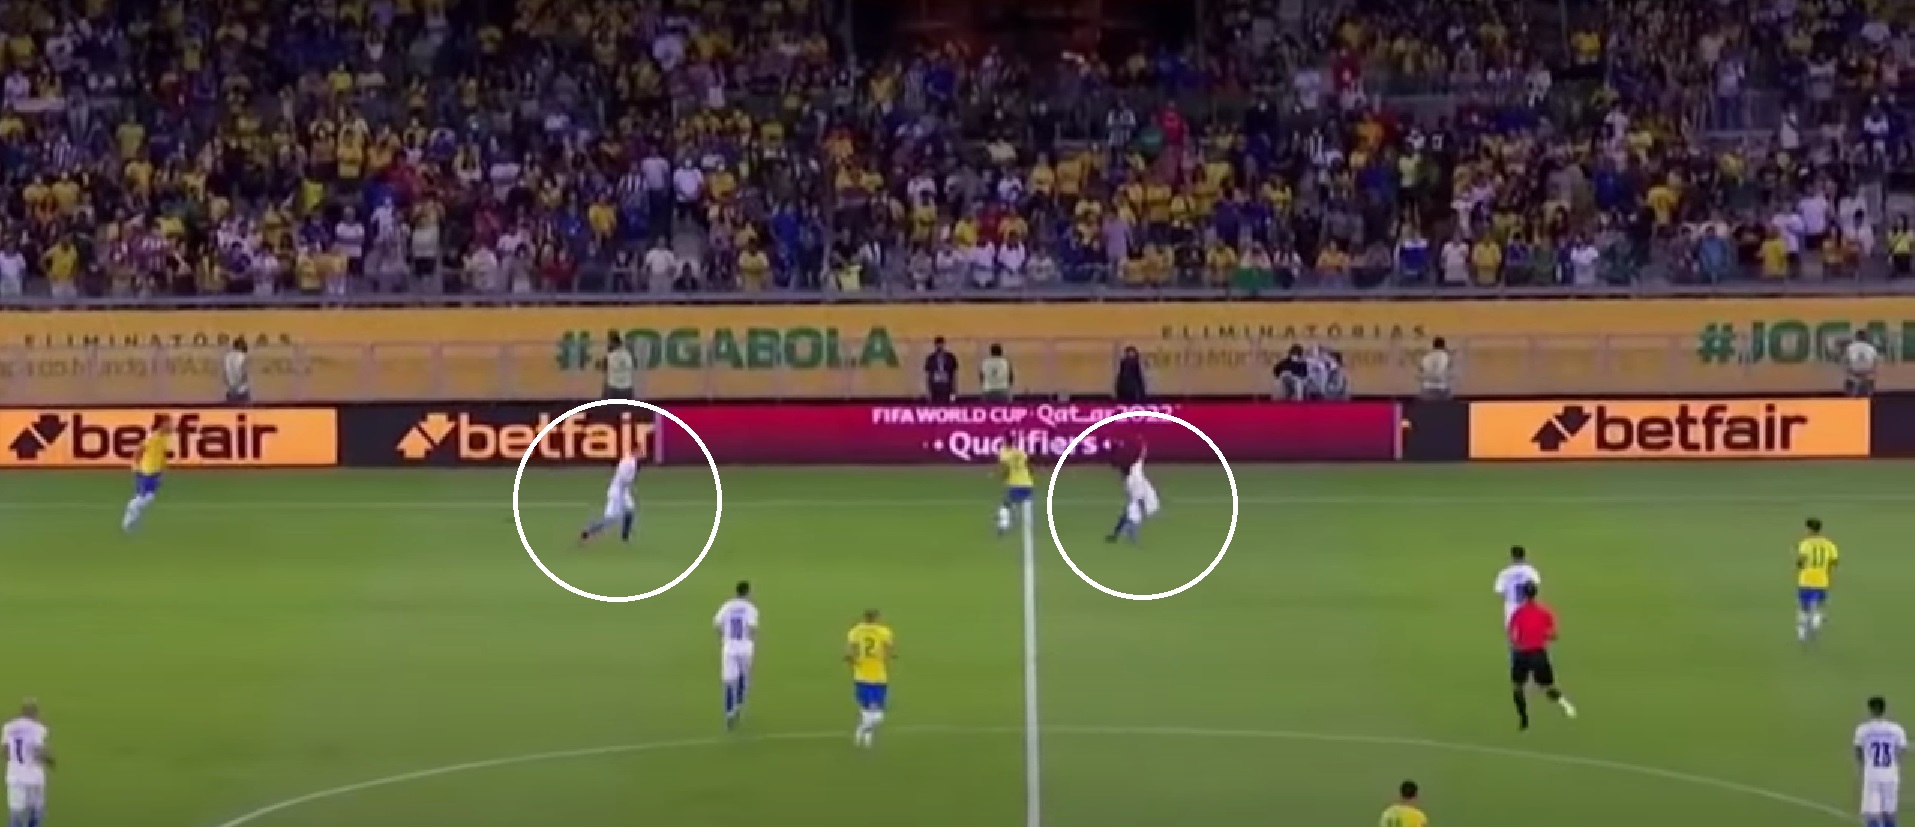 Винисиус издевается над игроками Парагвая: ровно 10 секунд волшебства